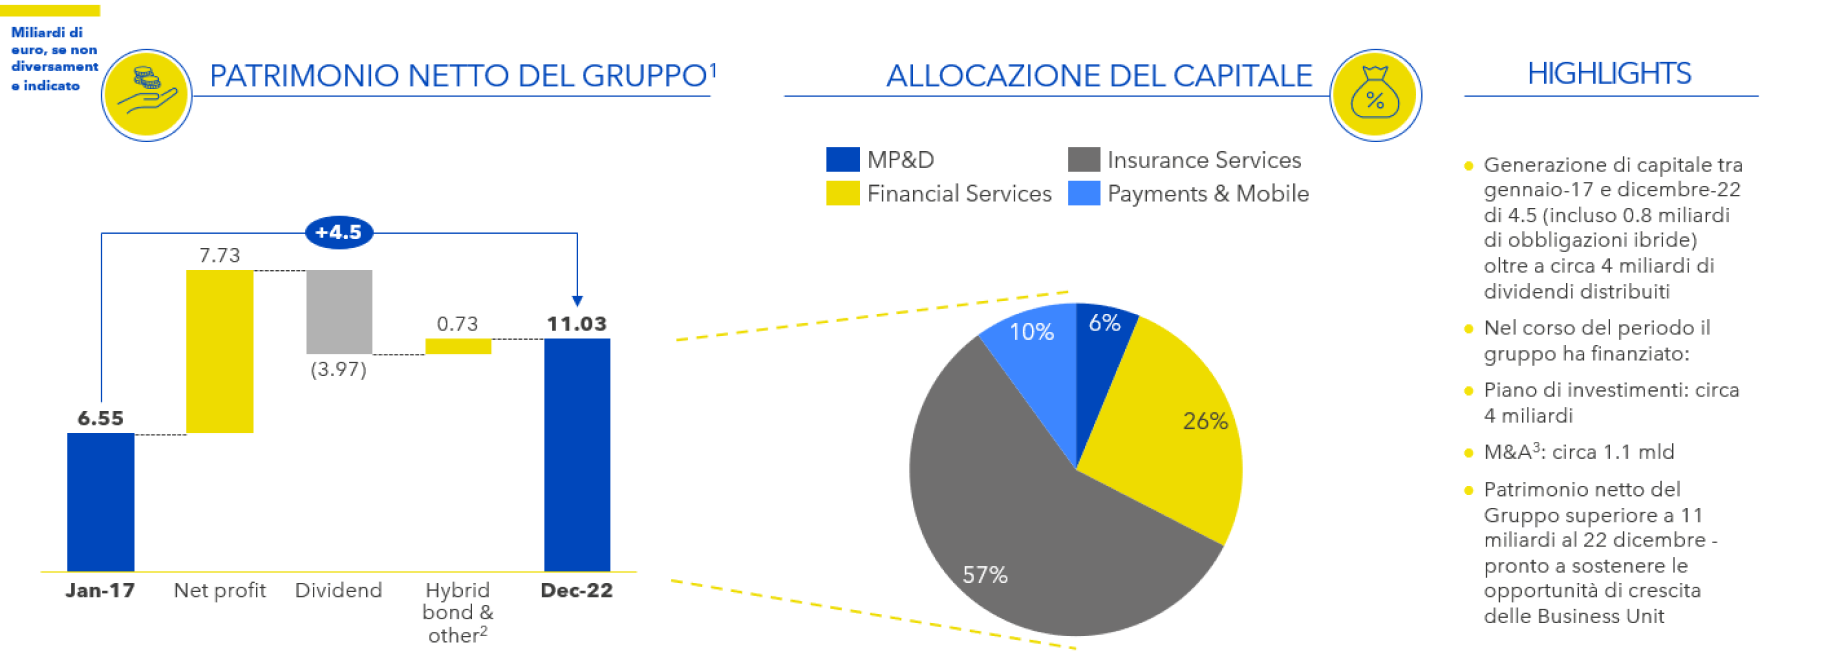 Evoluzione del patrimonio netto del Gruppo dal 2017 al 2022. Allocazione del capitale: (57% Insurance Services, 26% Financial Services; 10% Payments&Mobile; 6%MP&D). Highlights.